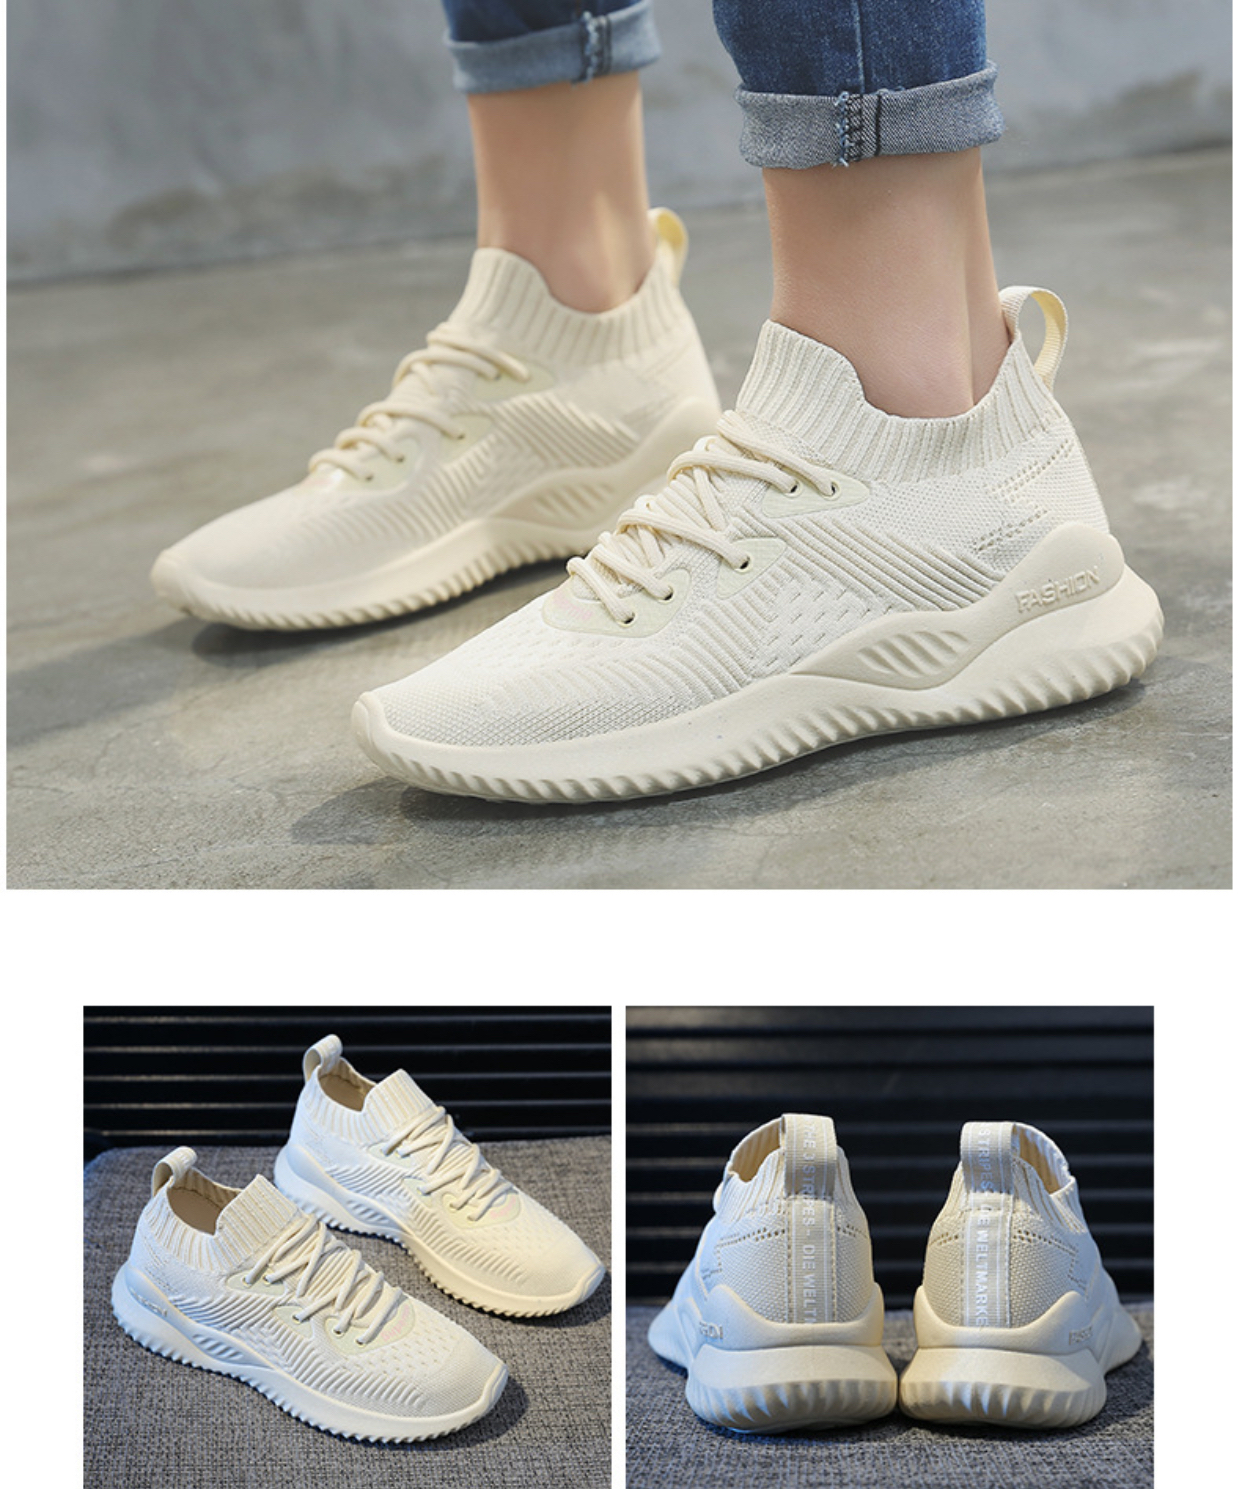 ภาพประกอบของ Kadine รองเท้าผ้าใบผู้หญิง รองเท้าแฟชั่น สไตล์เกาหลี No.A418 แนะนำเพิ่ม1ไซศ์